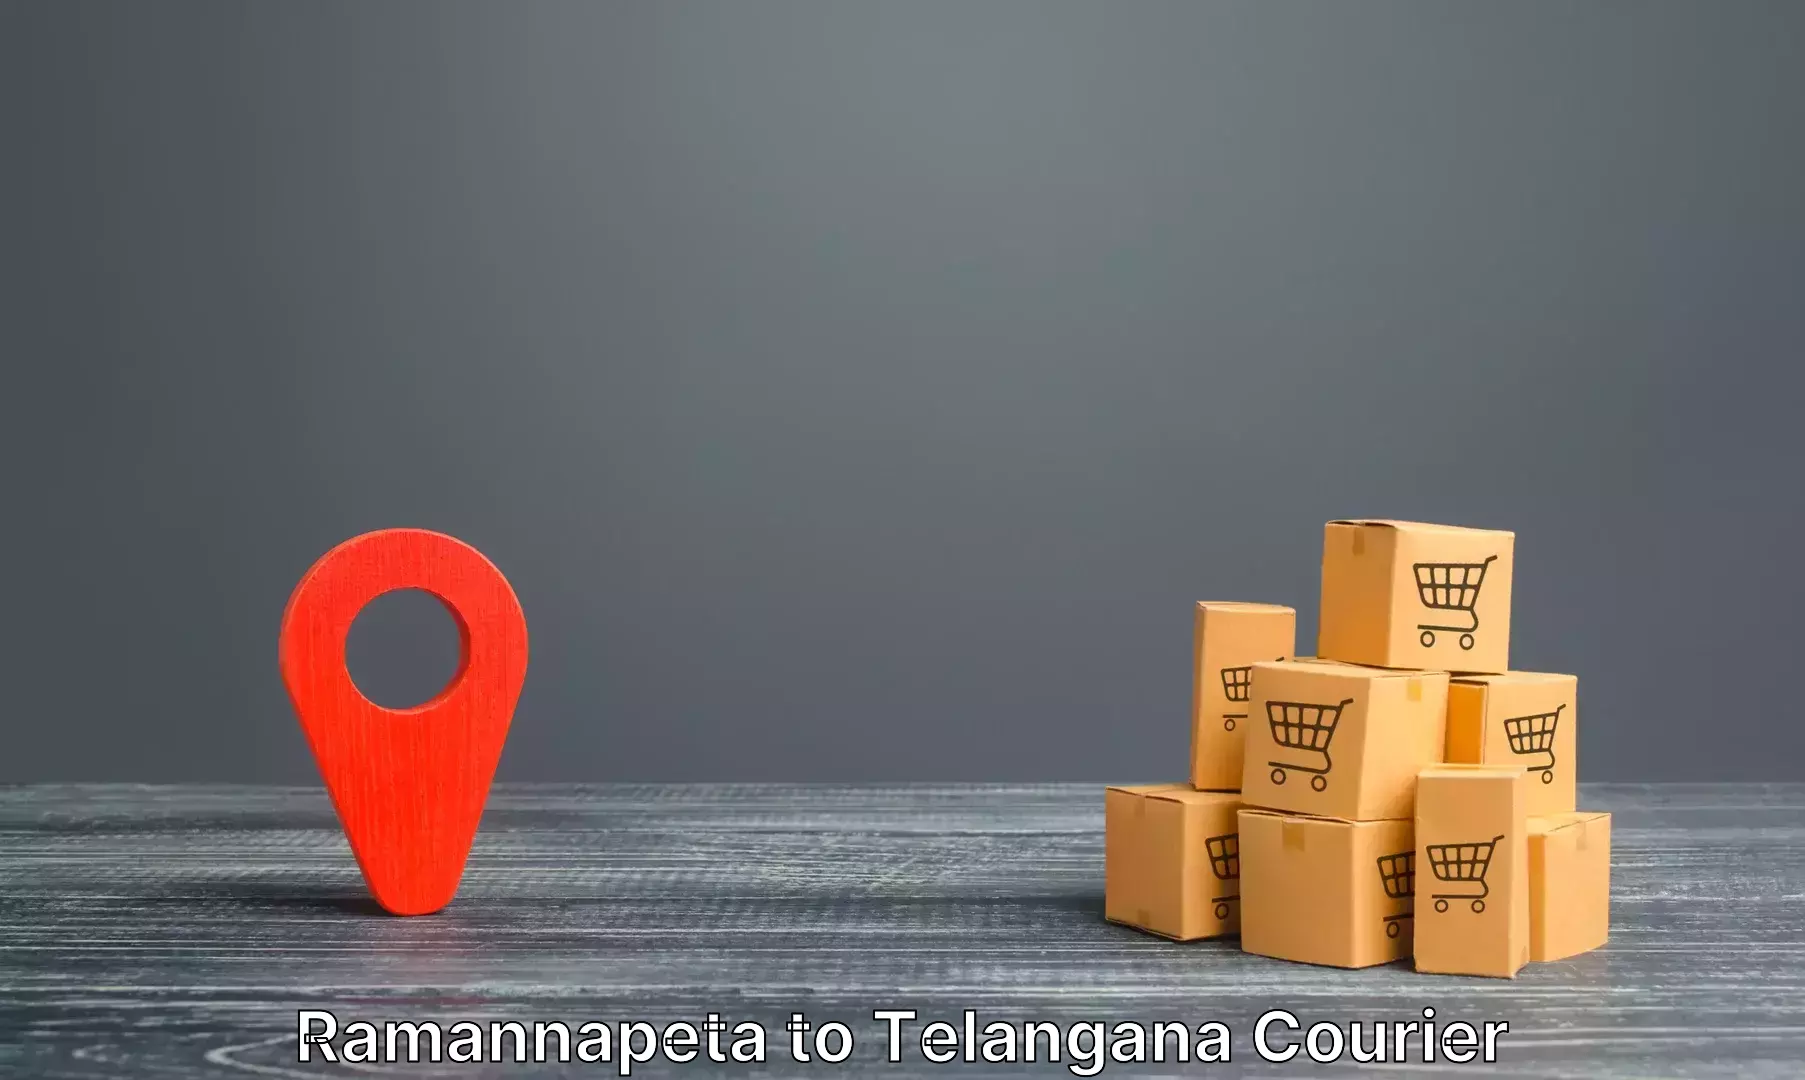 Luggage shipping specialists Ramannapeta to Nakerakal